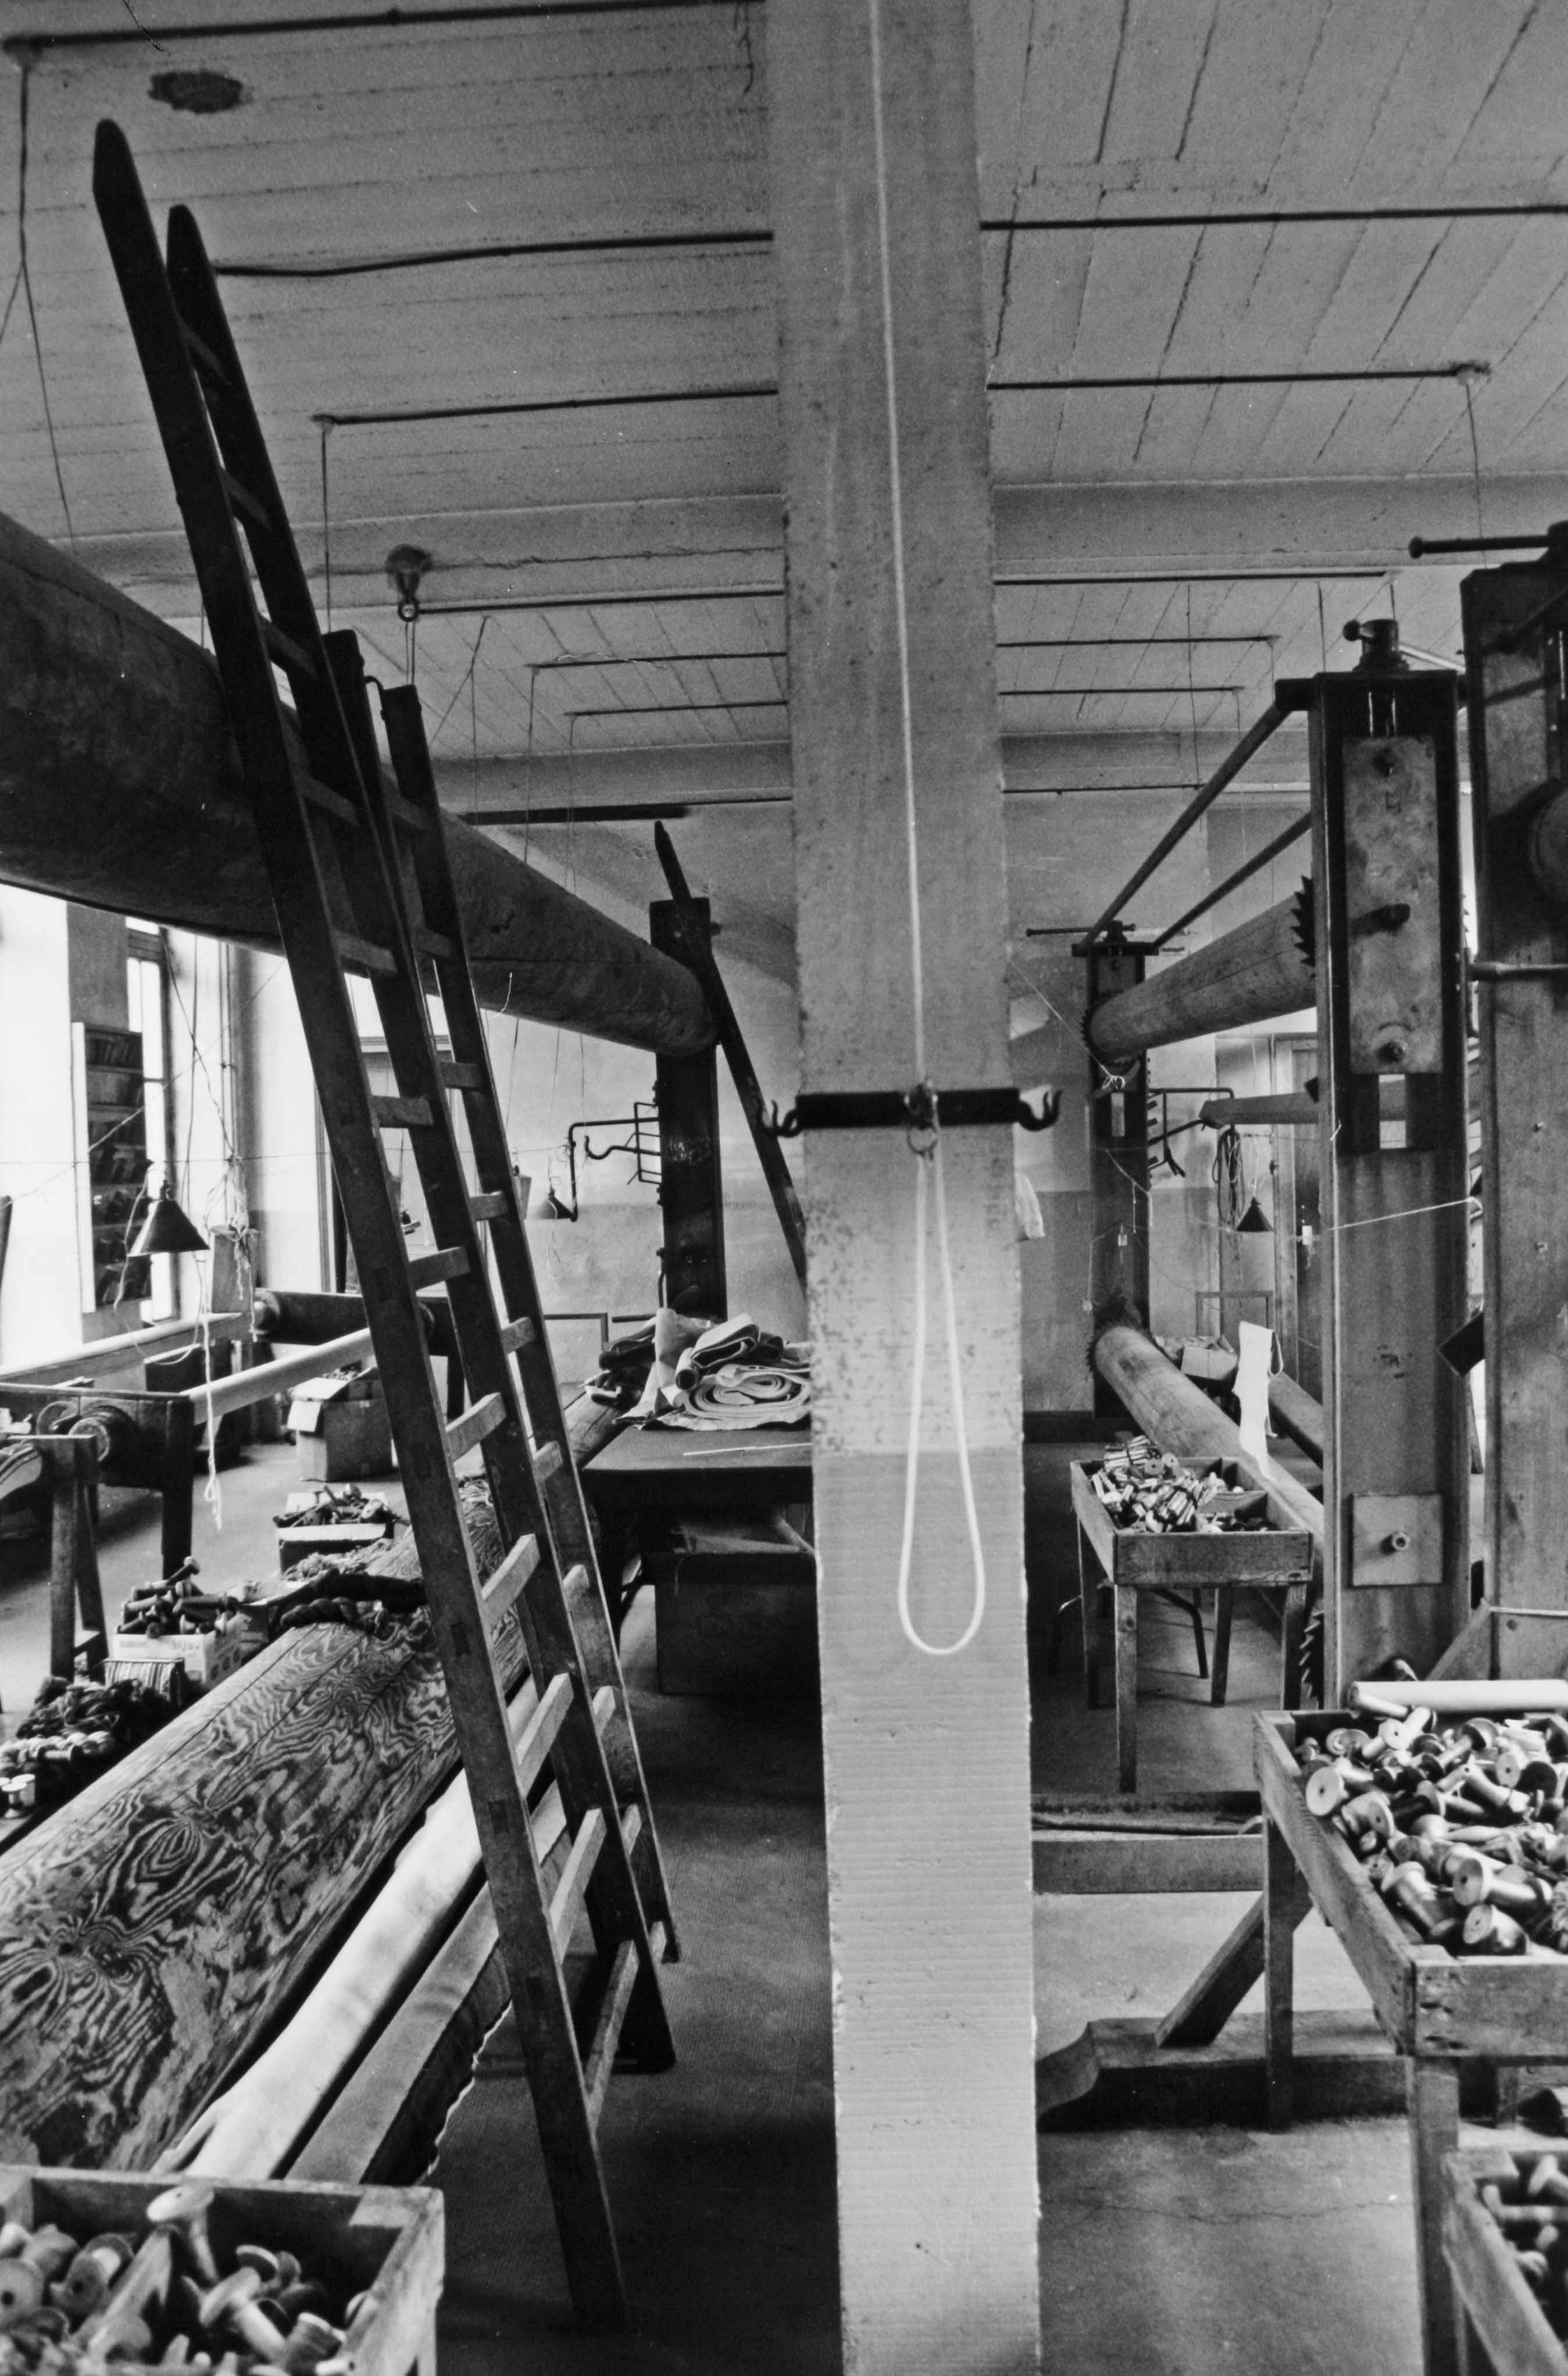 L'atelier de tissage en haute lisse, au rez-de-chaussée, lors de la fermeture de la manufacture (reportage photographique de L. Yeghicheyan, 1992, Aubusson, Musée départemental de la Tapisserie)